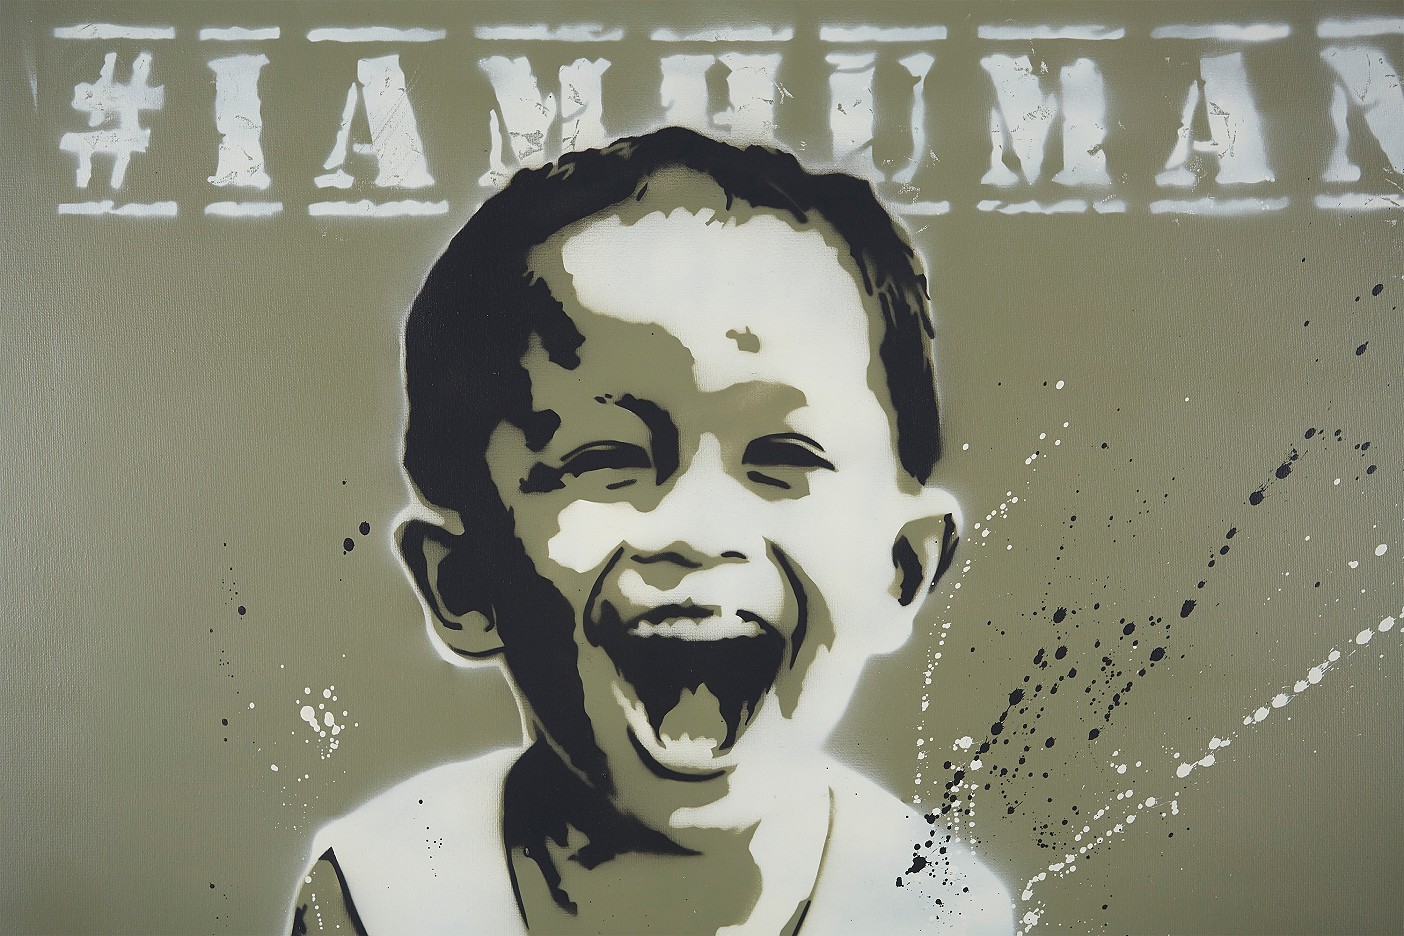 #iamhuman - my name is buakaw